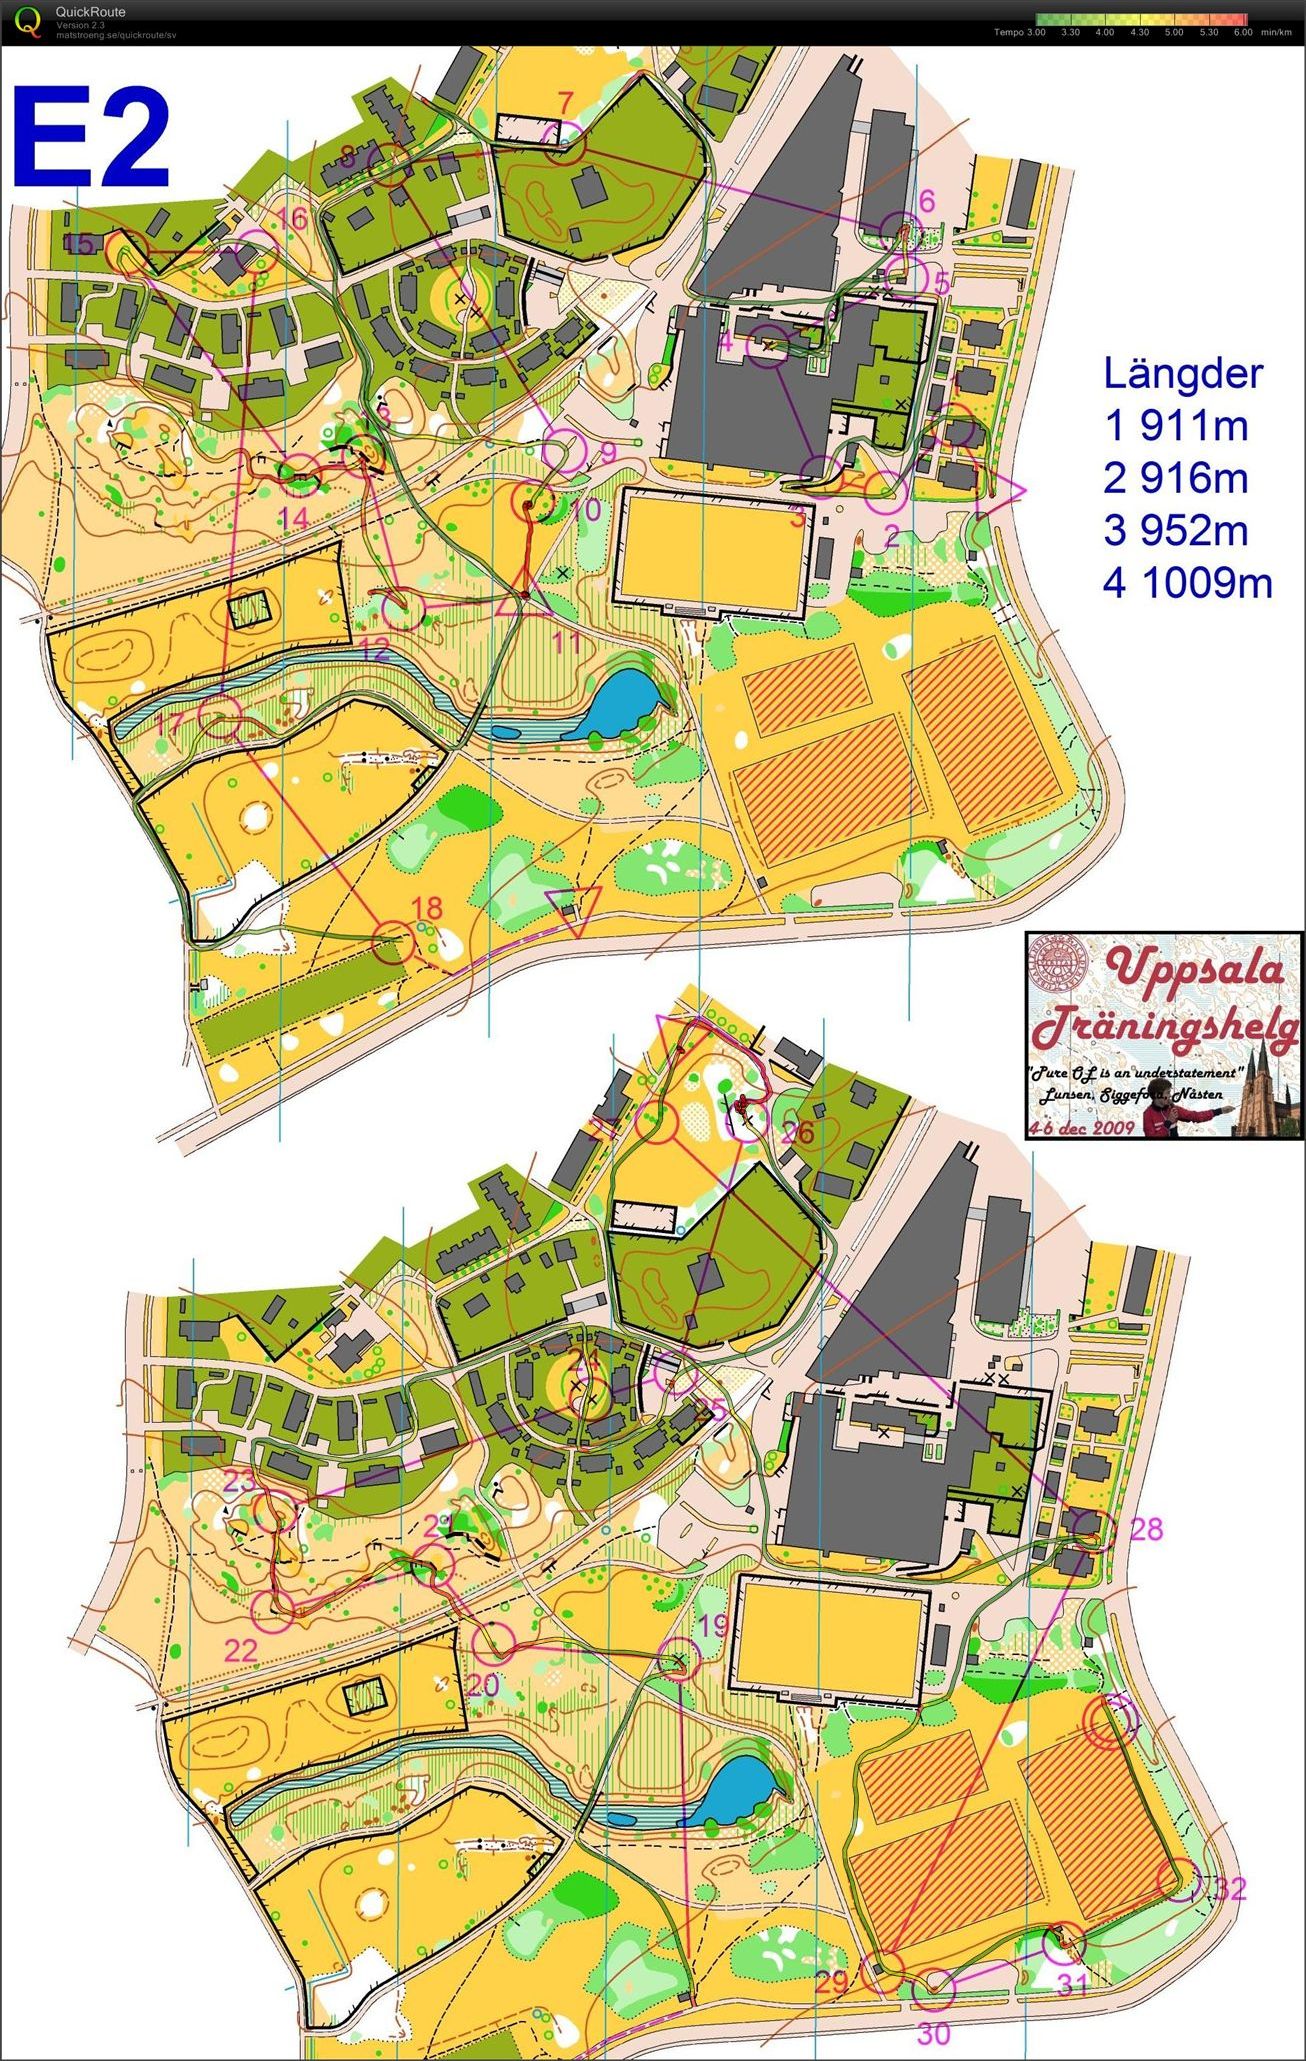 Uppsala träningshelg - Sprintintervaller (04-12-2009)